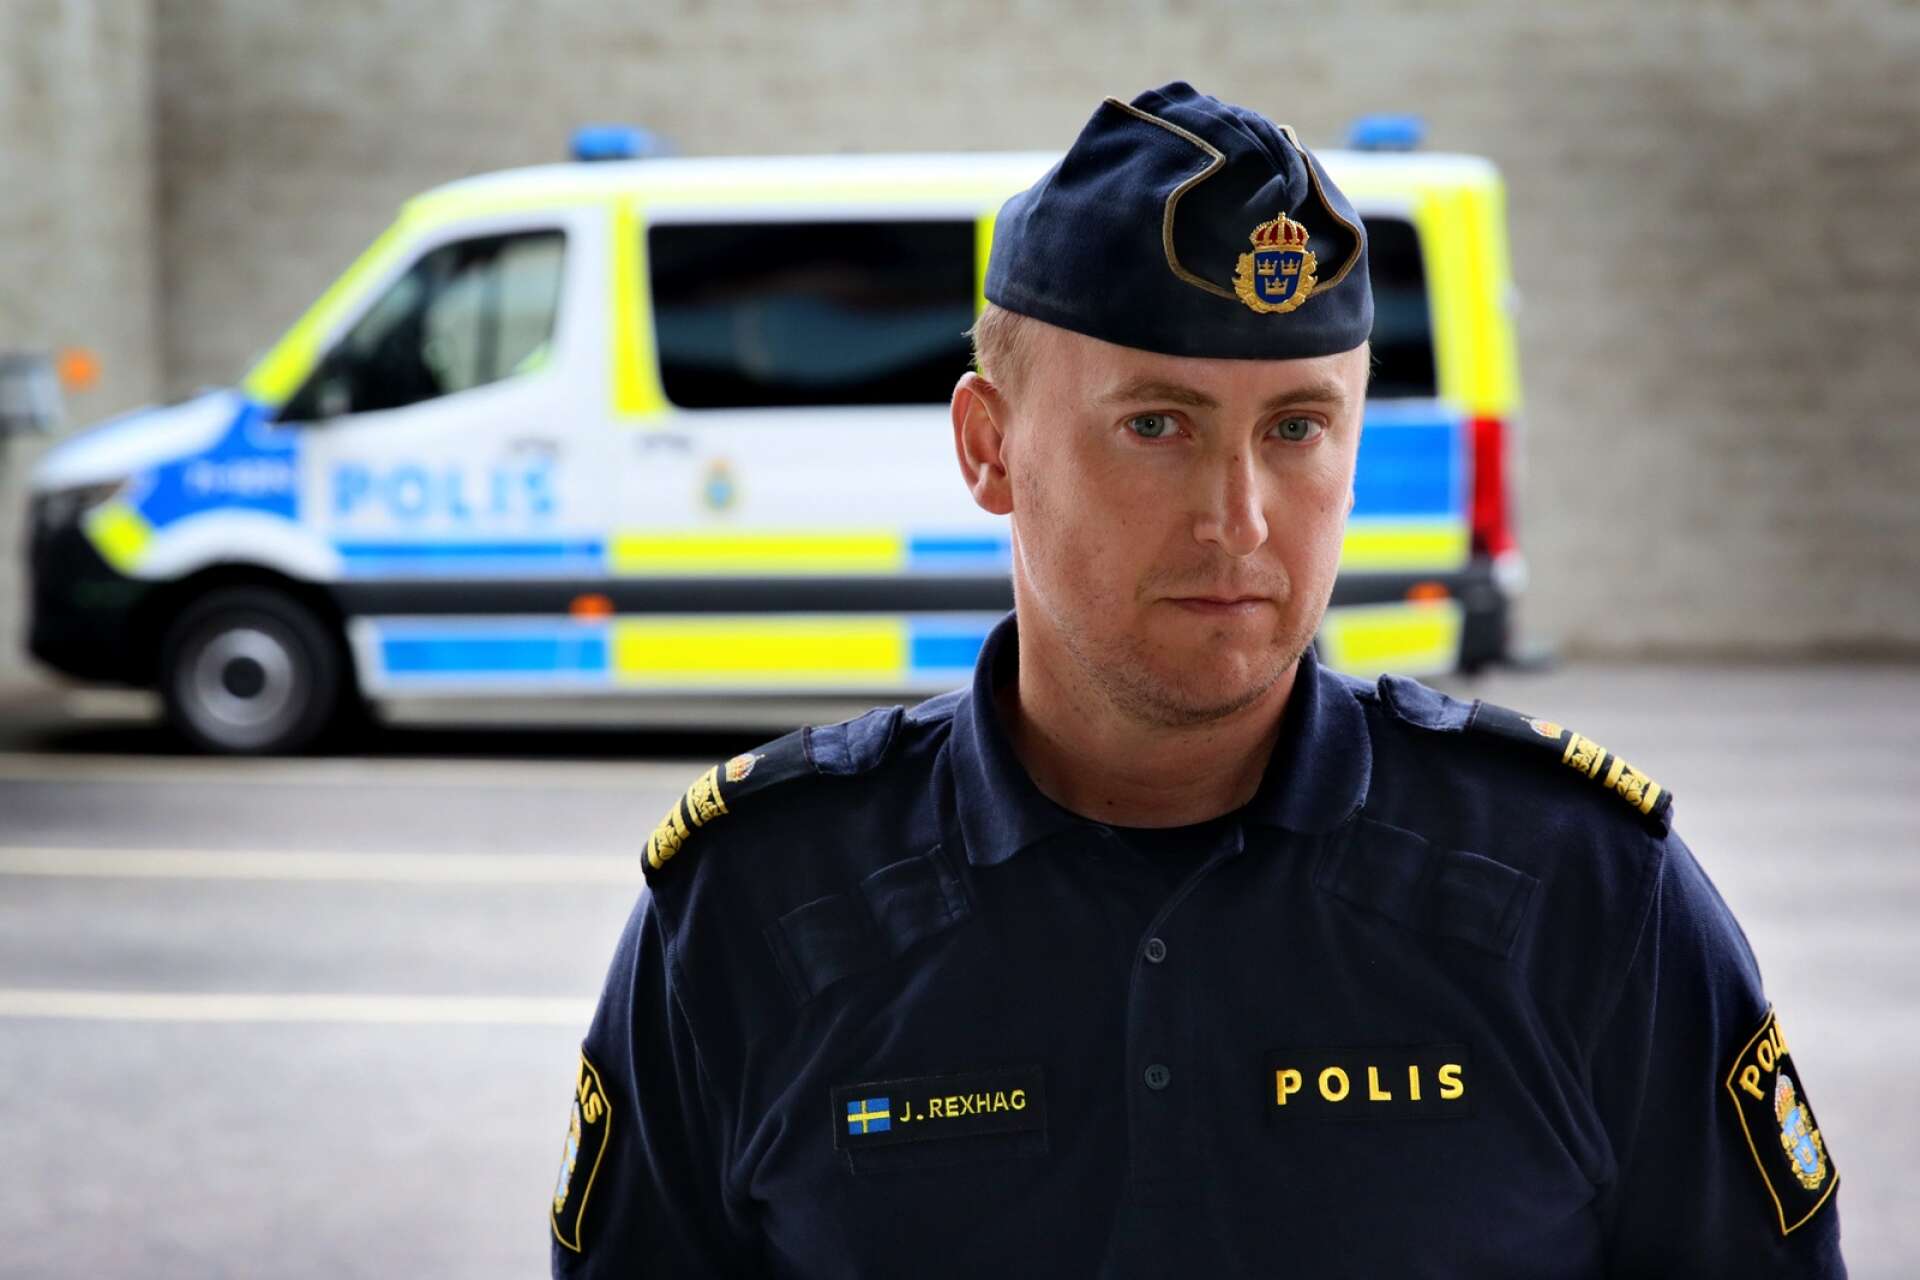 Polisen följer utvecklingen kring de konkurrerande mc-klubbarna i Lidköpingsområdet noggrant. ”Det ska inte råda något tvivel om att polisen i Skaraborg kommer agera om det begås kriminella handlingar i de här miljöerna” säger områdeschefen Johan Rexhag. 